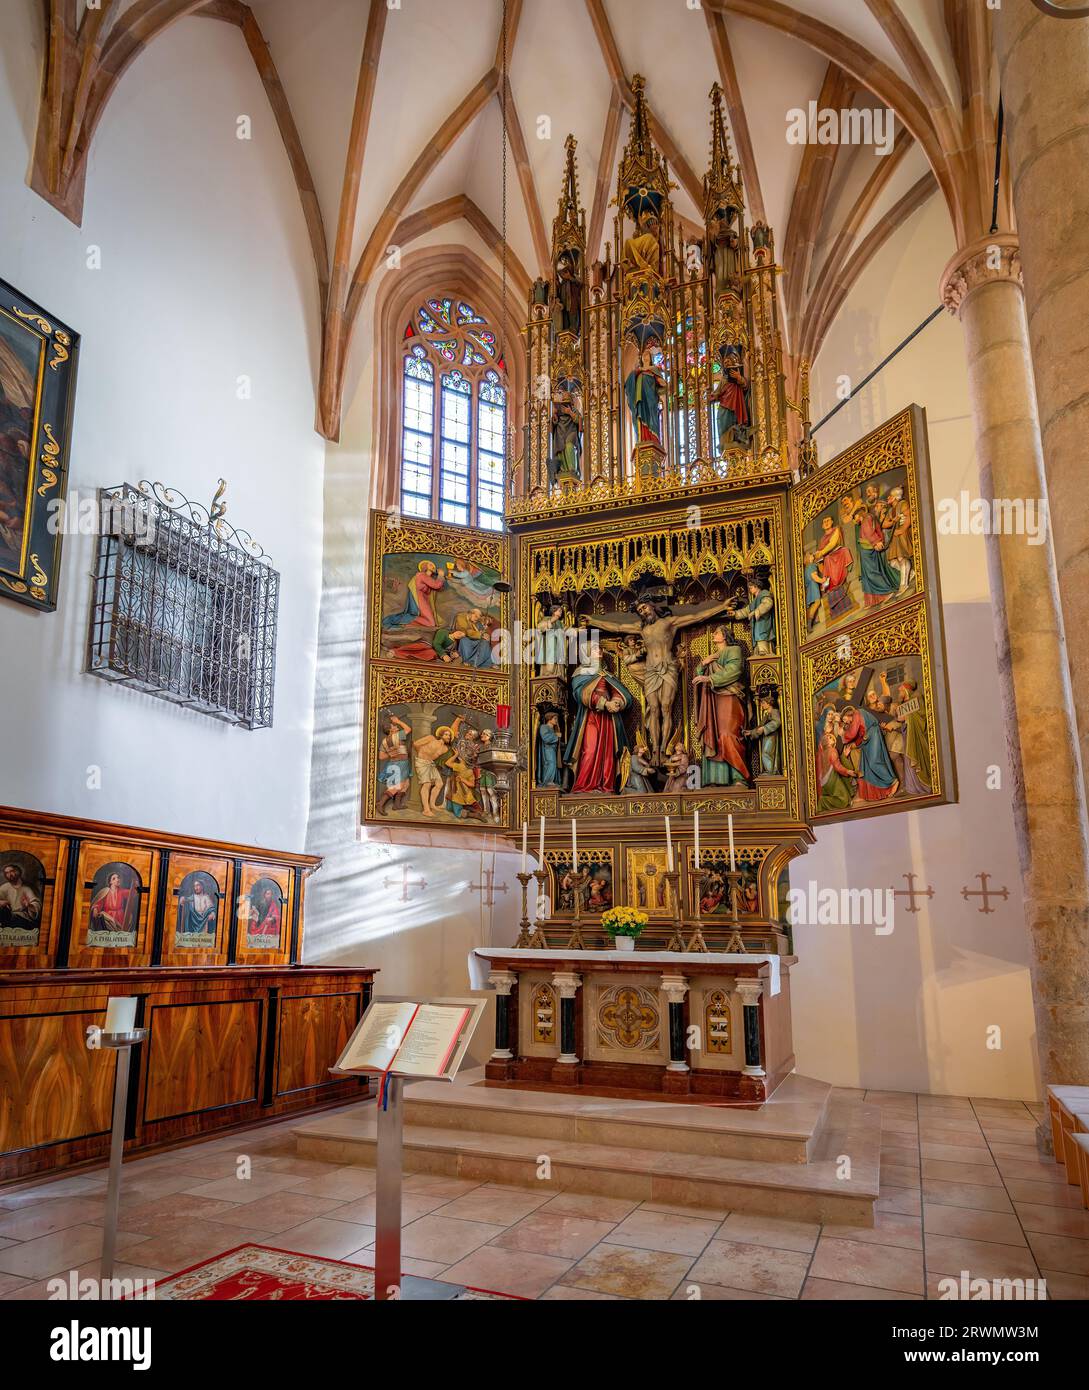 Autel de croix néo-gothique à l'intérieur de l'église catholique - Hallstatt, Autriche Banque D'Images